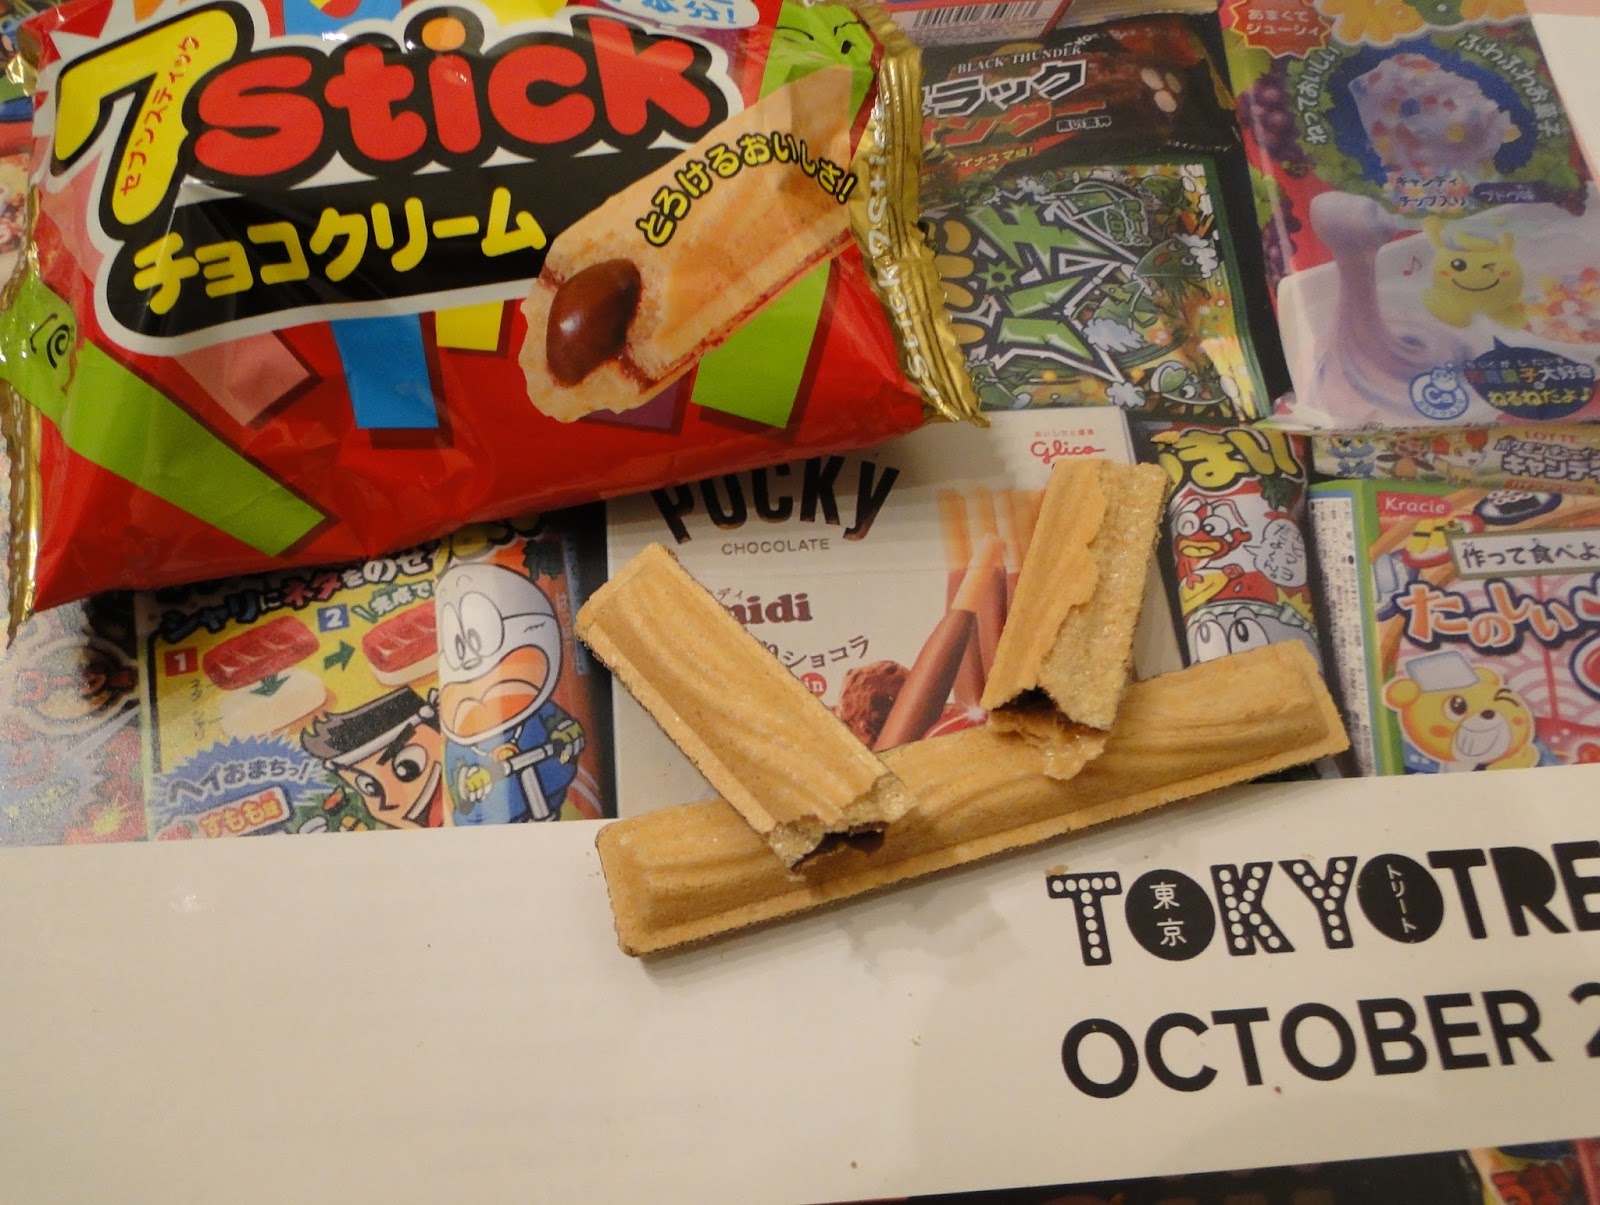 Cosmética en Acción: La cajita de chuches japonesas TokyoTreat de